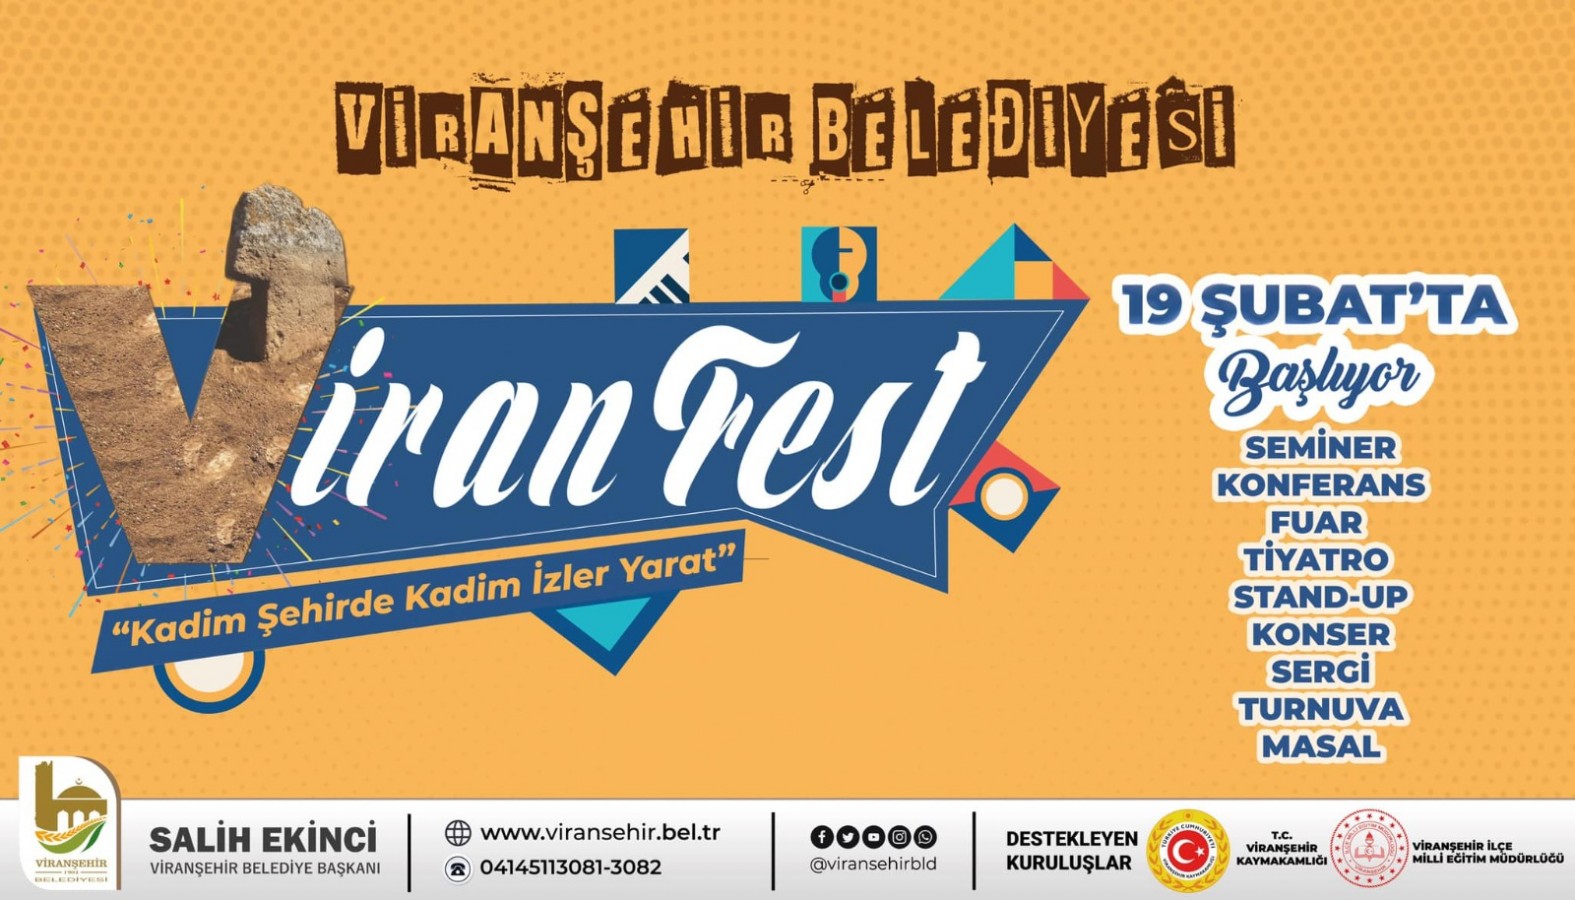 Viranşehir Belediyesi’nden çok amaçlı festival hazırlığı;